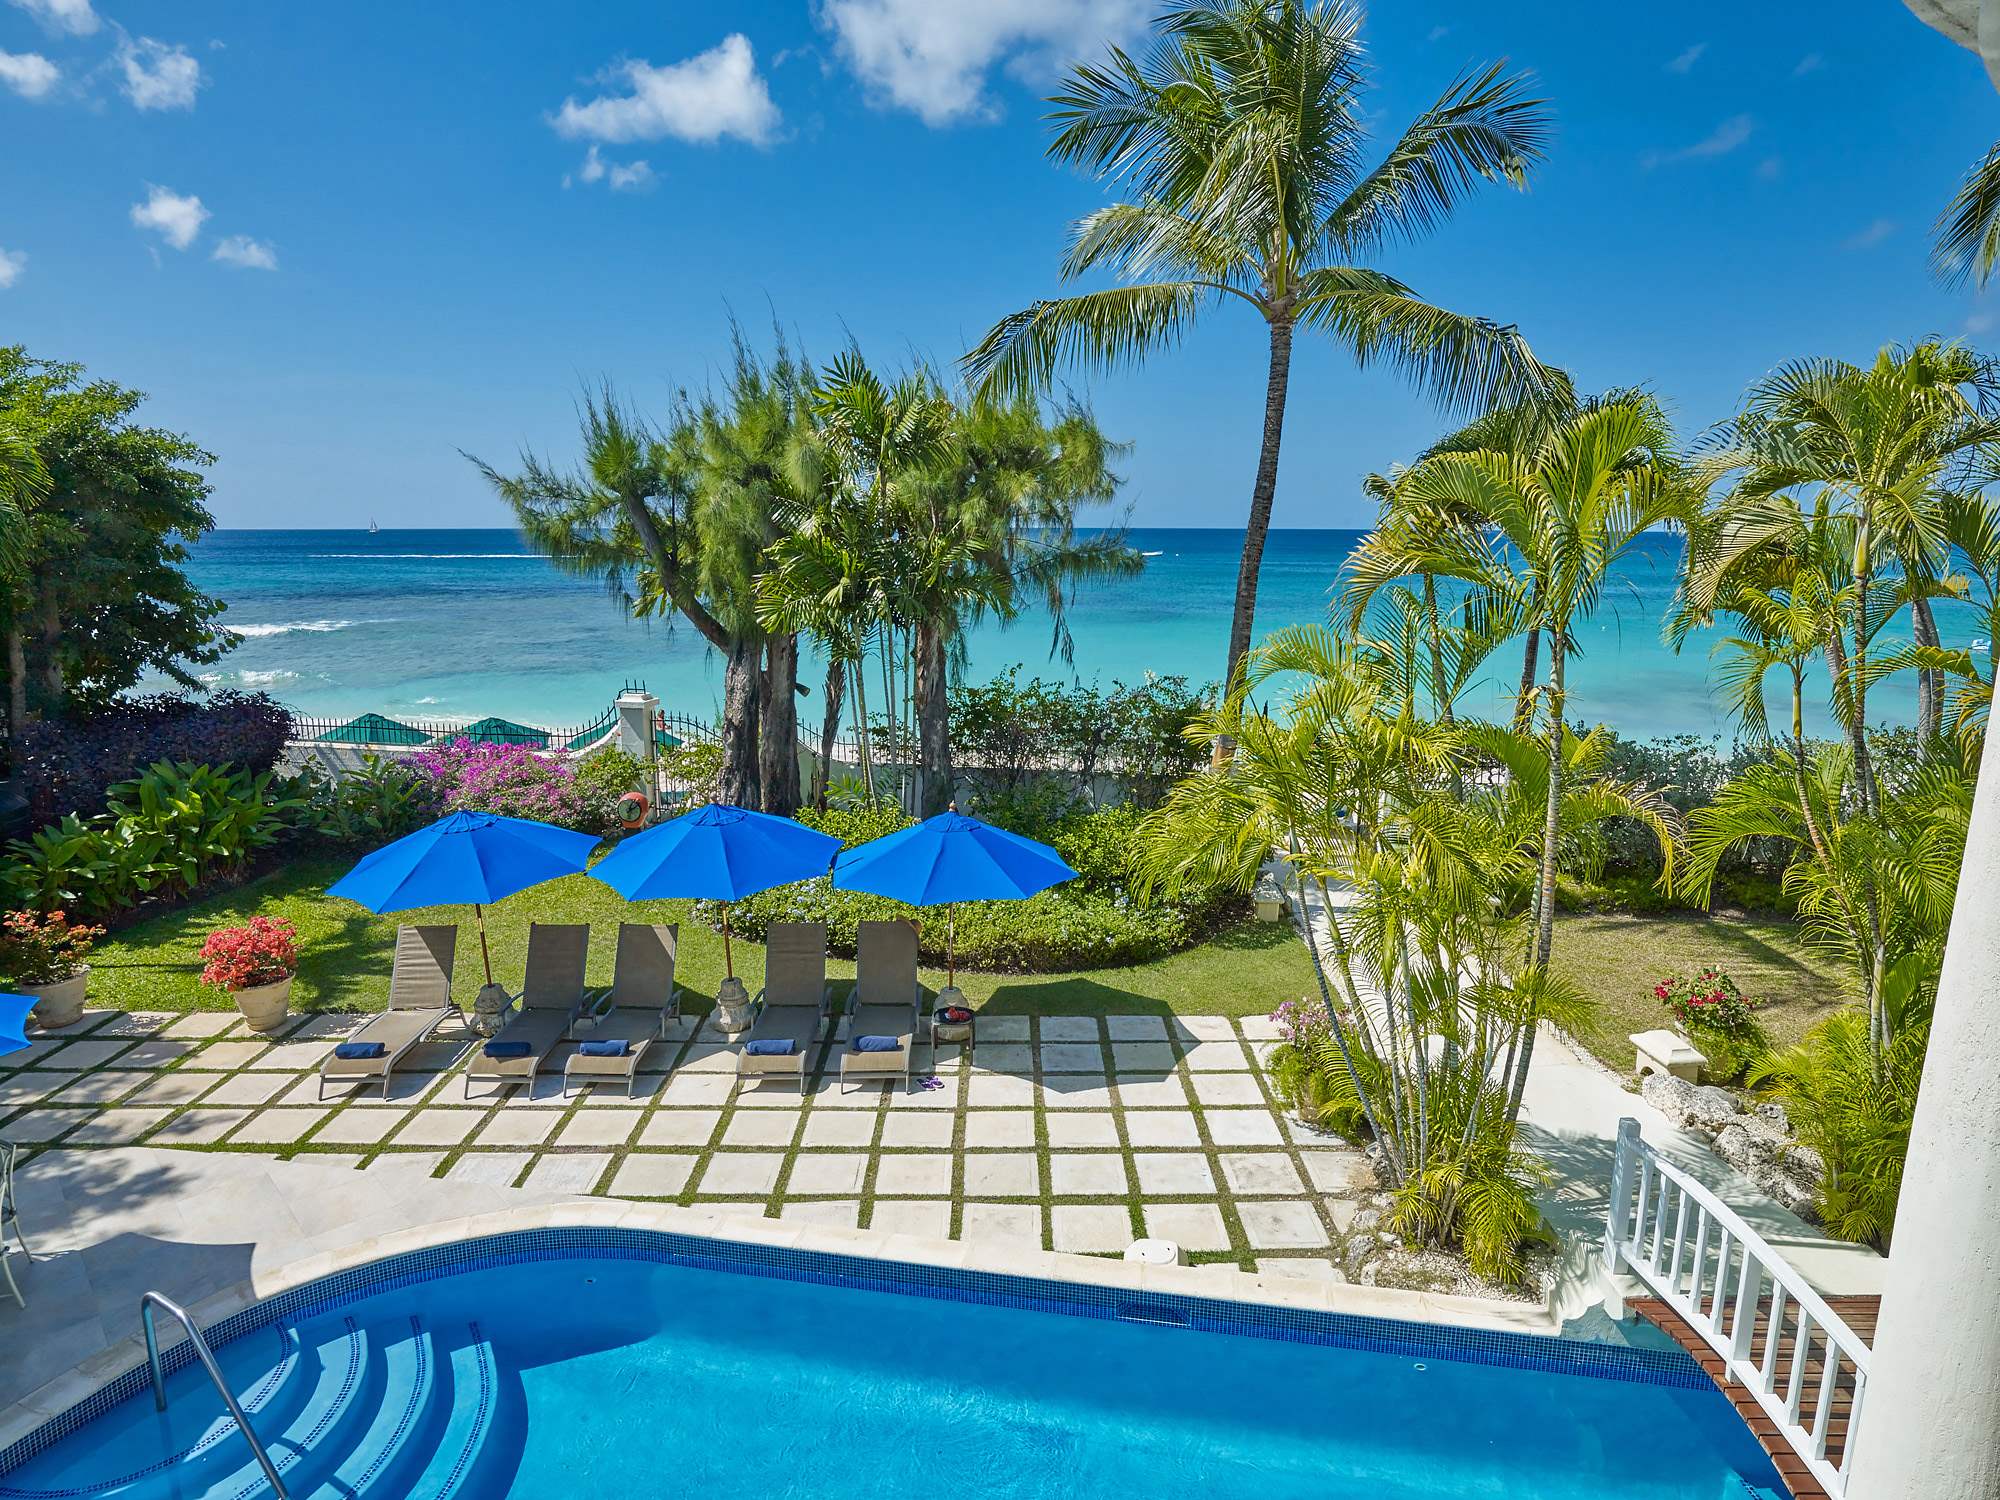 New Mansion, 4 bedroom villa in St. James & West Coast, Barbados Photo #12